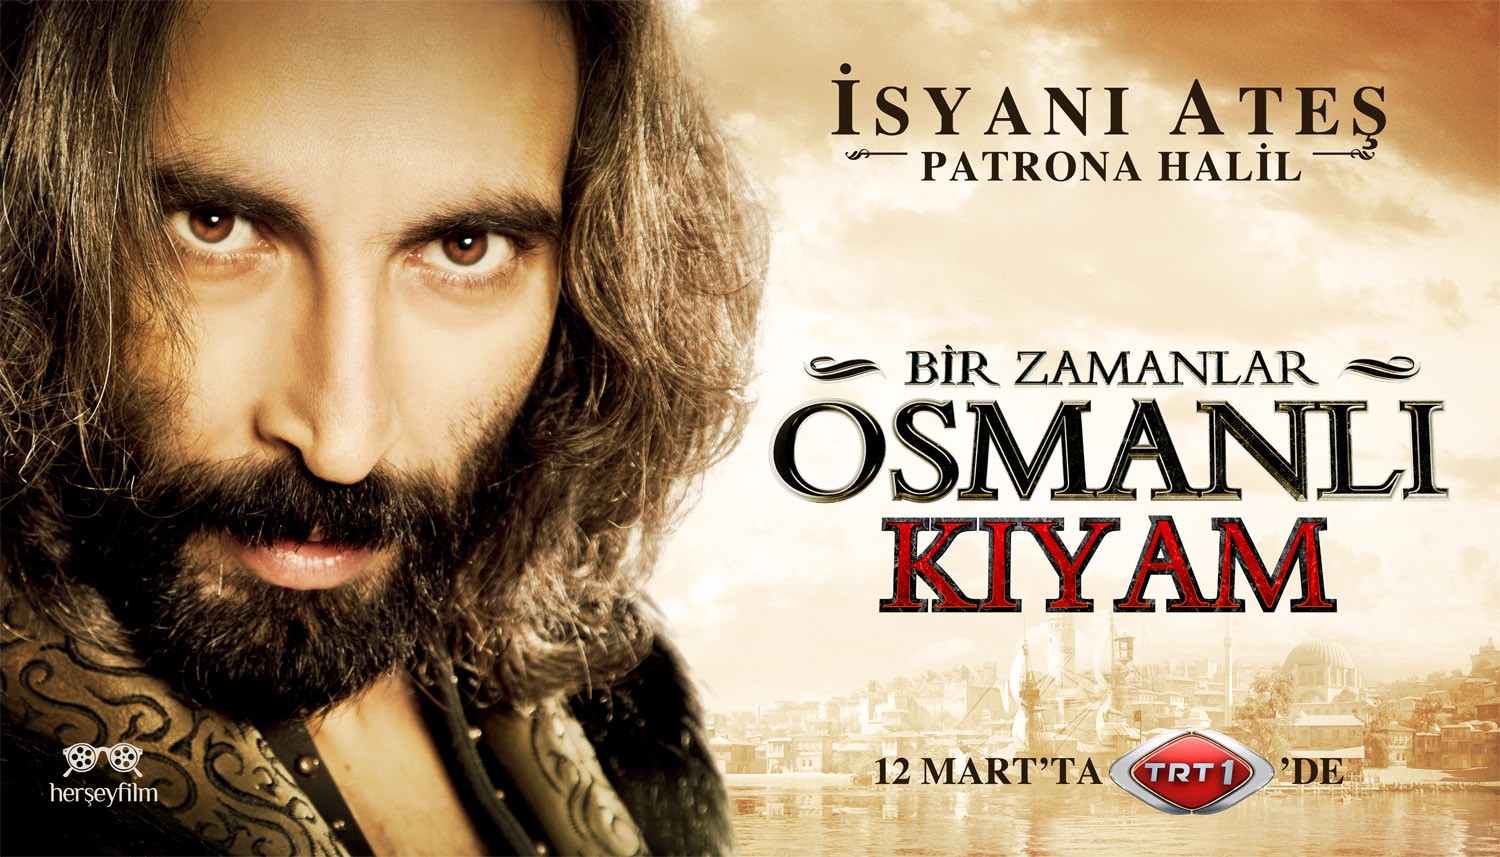 Extra Large TV Poster Image for Bir Zamanlar Osmanli Kiyam (#6 of 26)